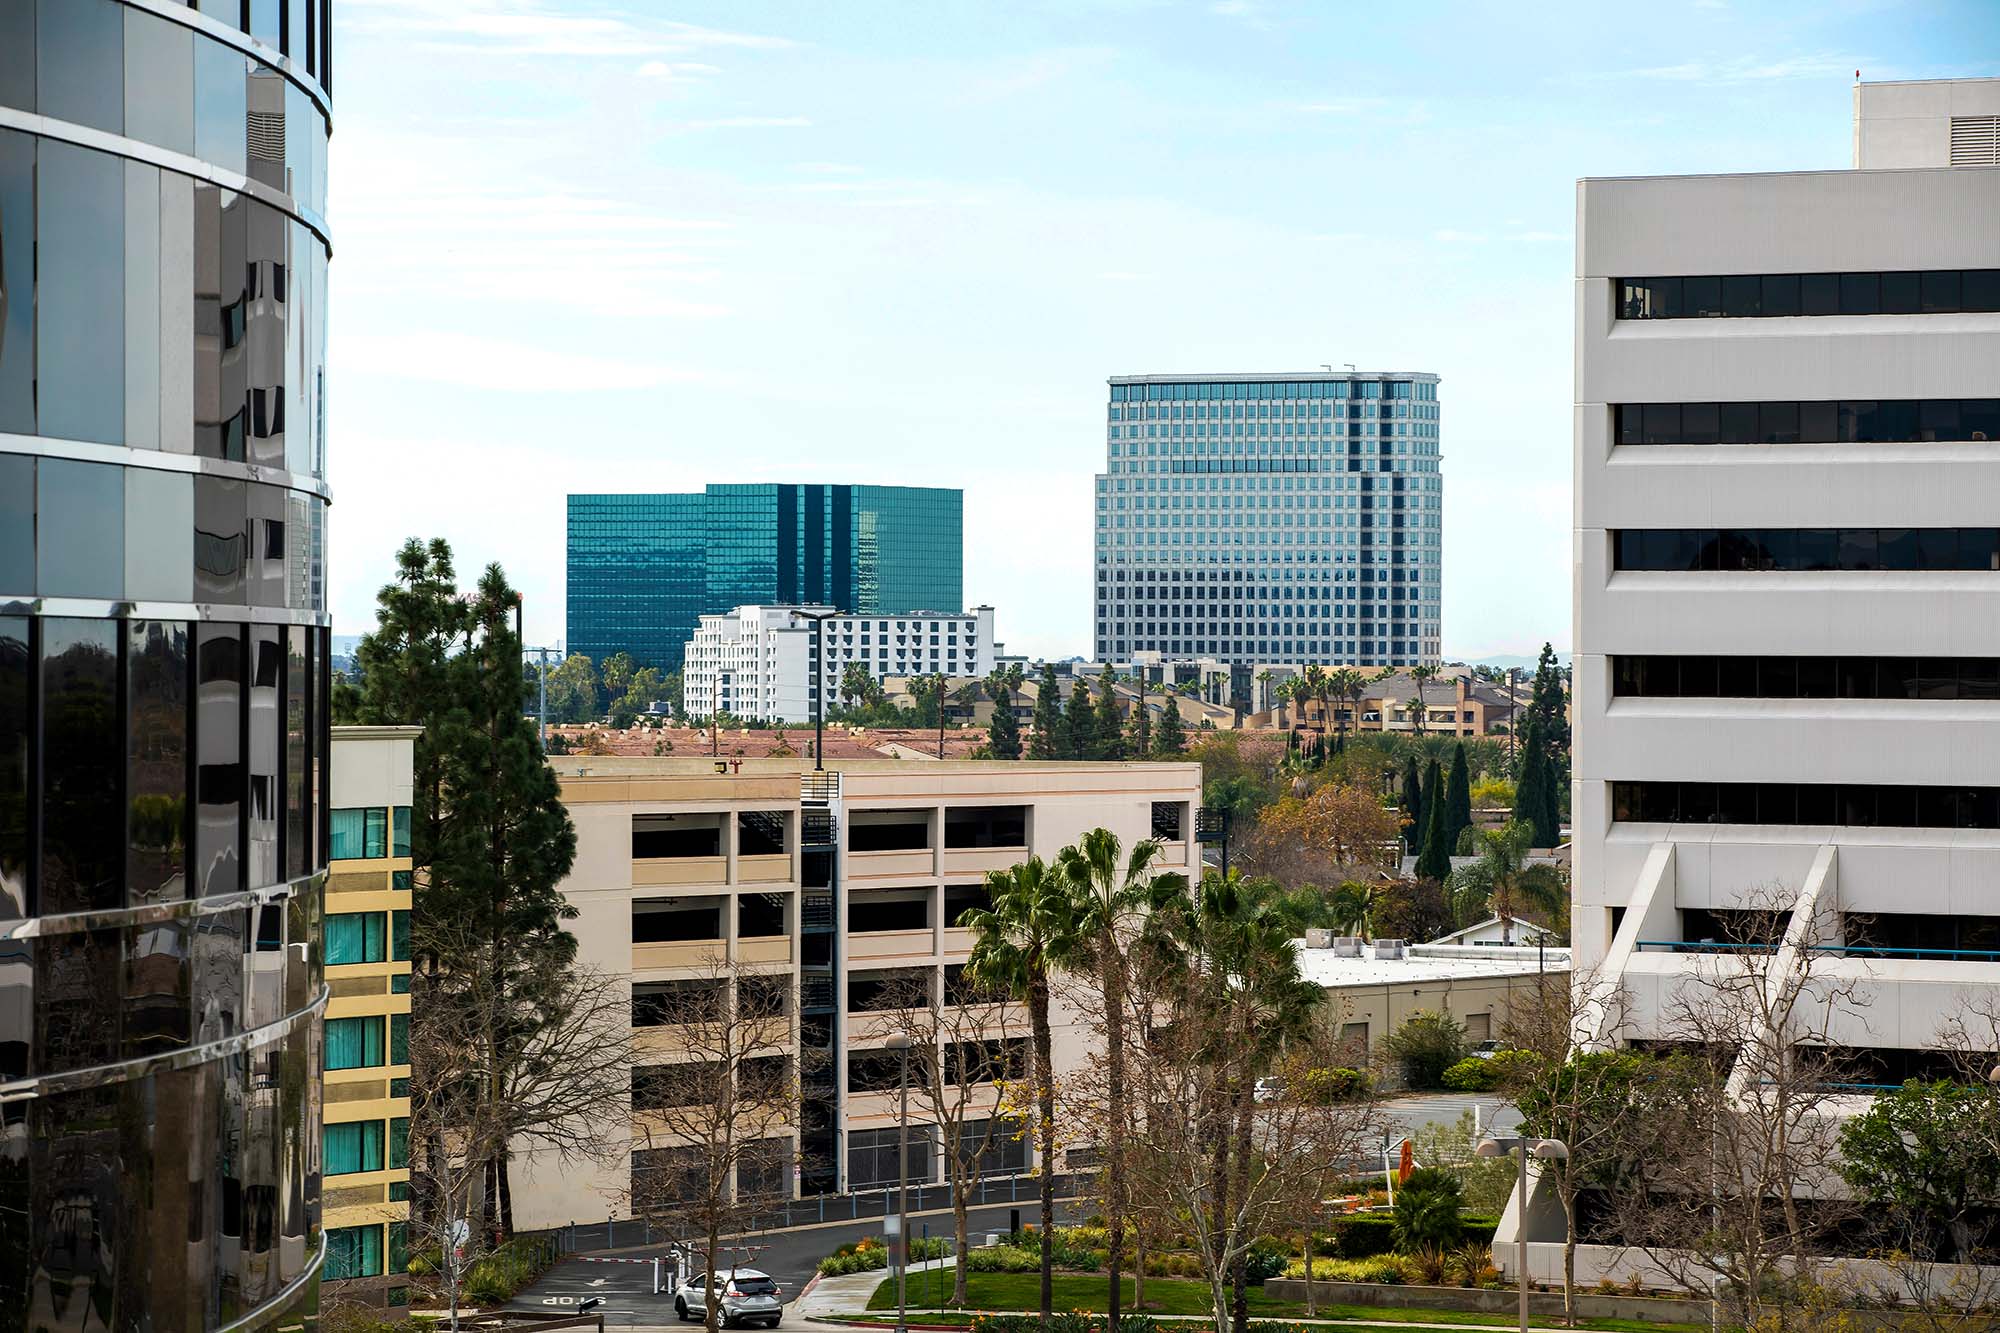 view of buildings in Costa Mesa, California